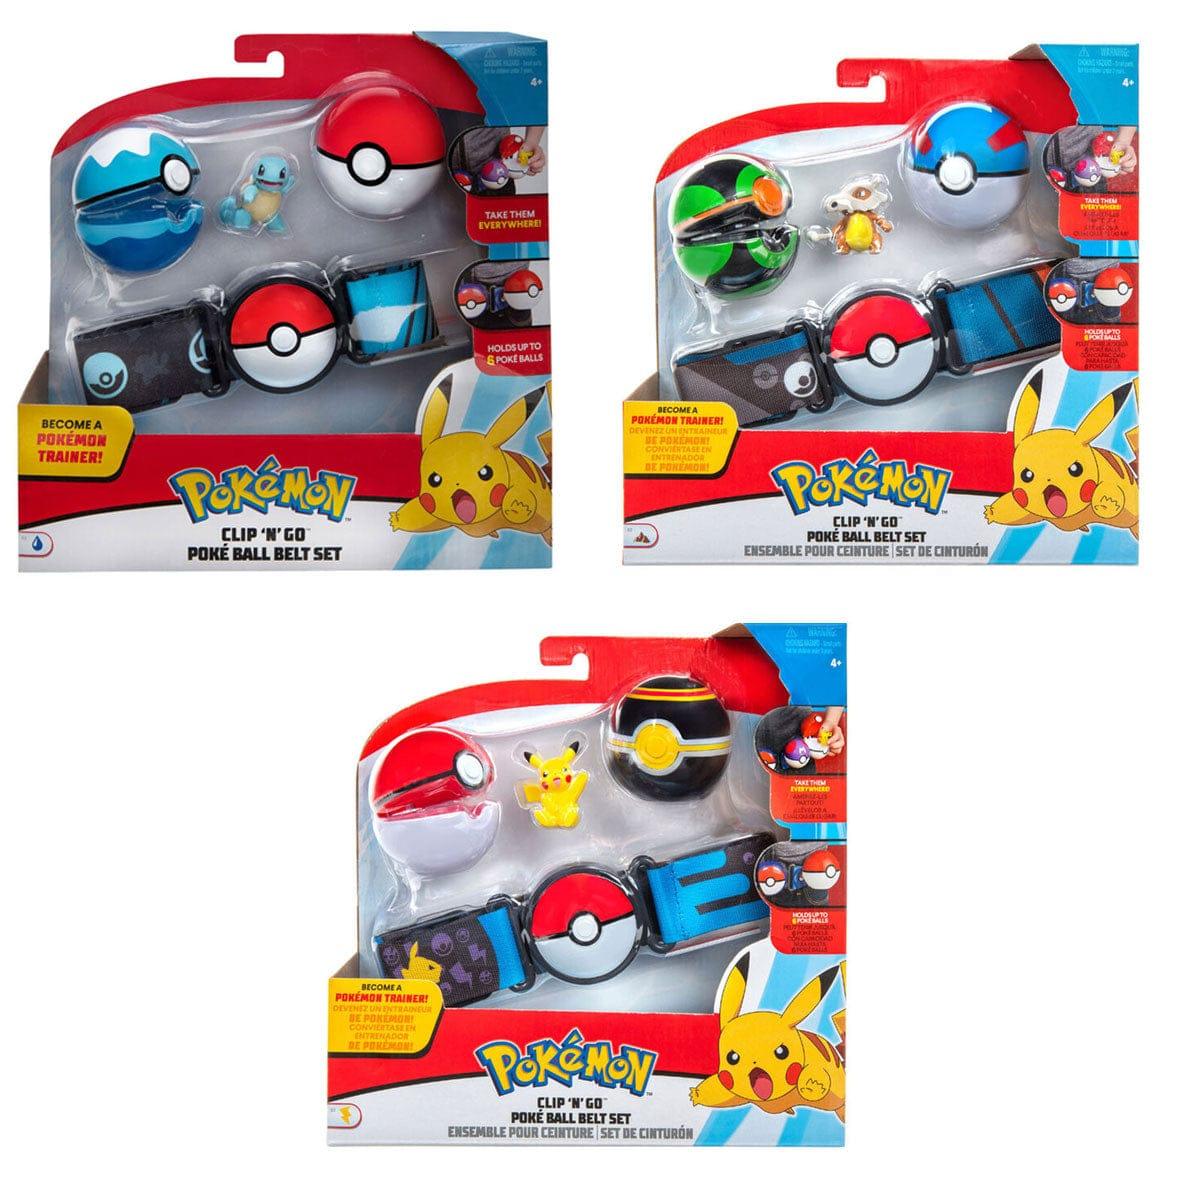 KELLYTOY Toys & Games Pokémon Clip 'N' Go Poké Ball Belt Set, Assortment, 1 Count